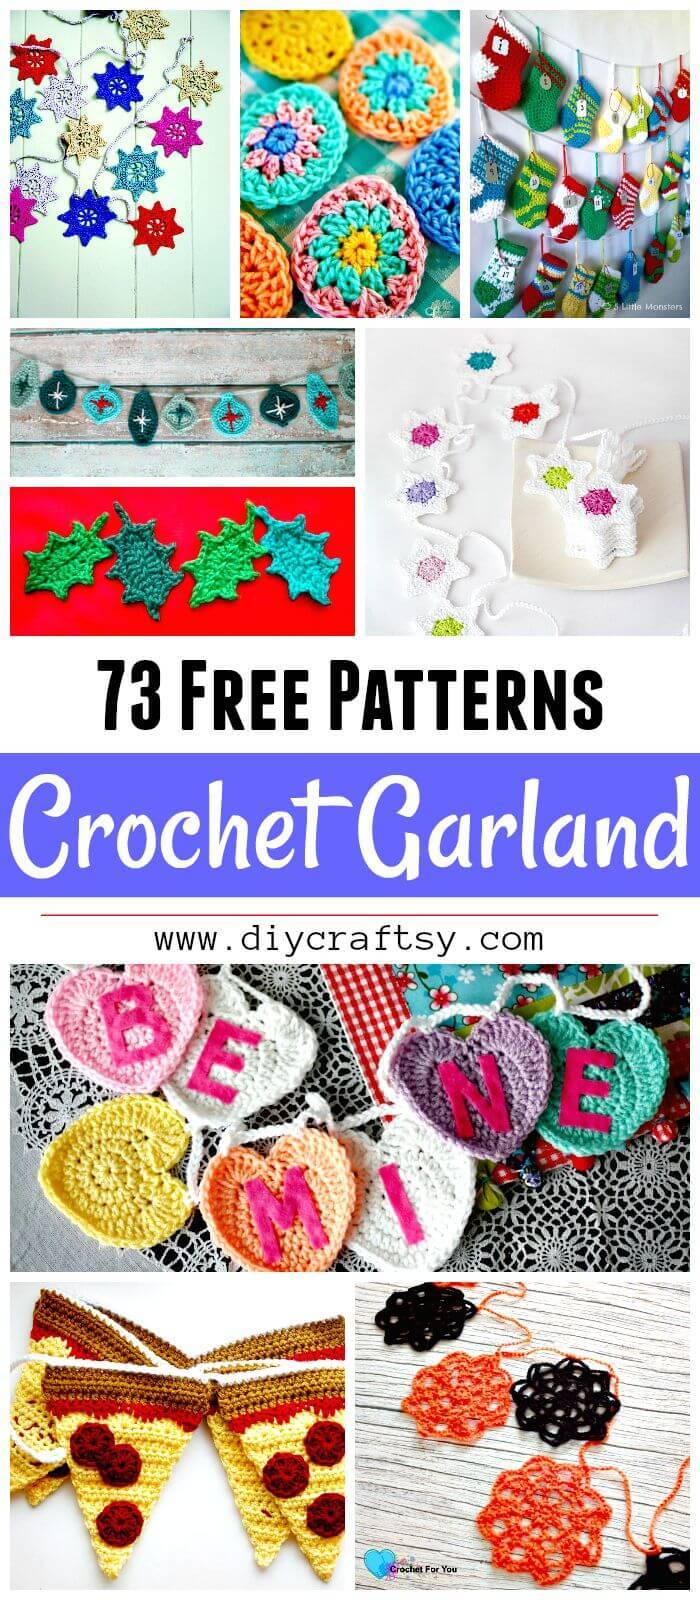 Crochet Garland Pattern - 73 Free Crochet Garland Ideas